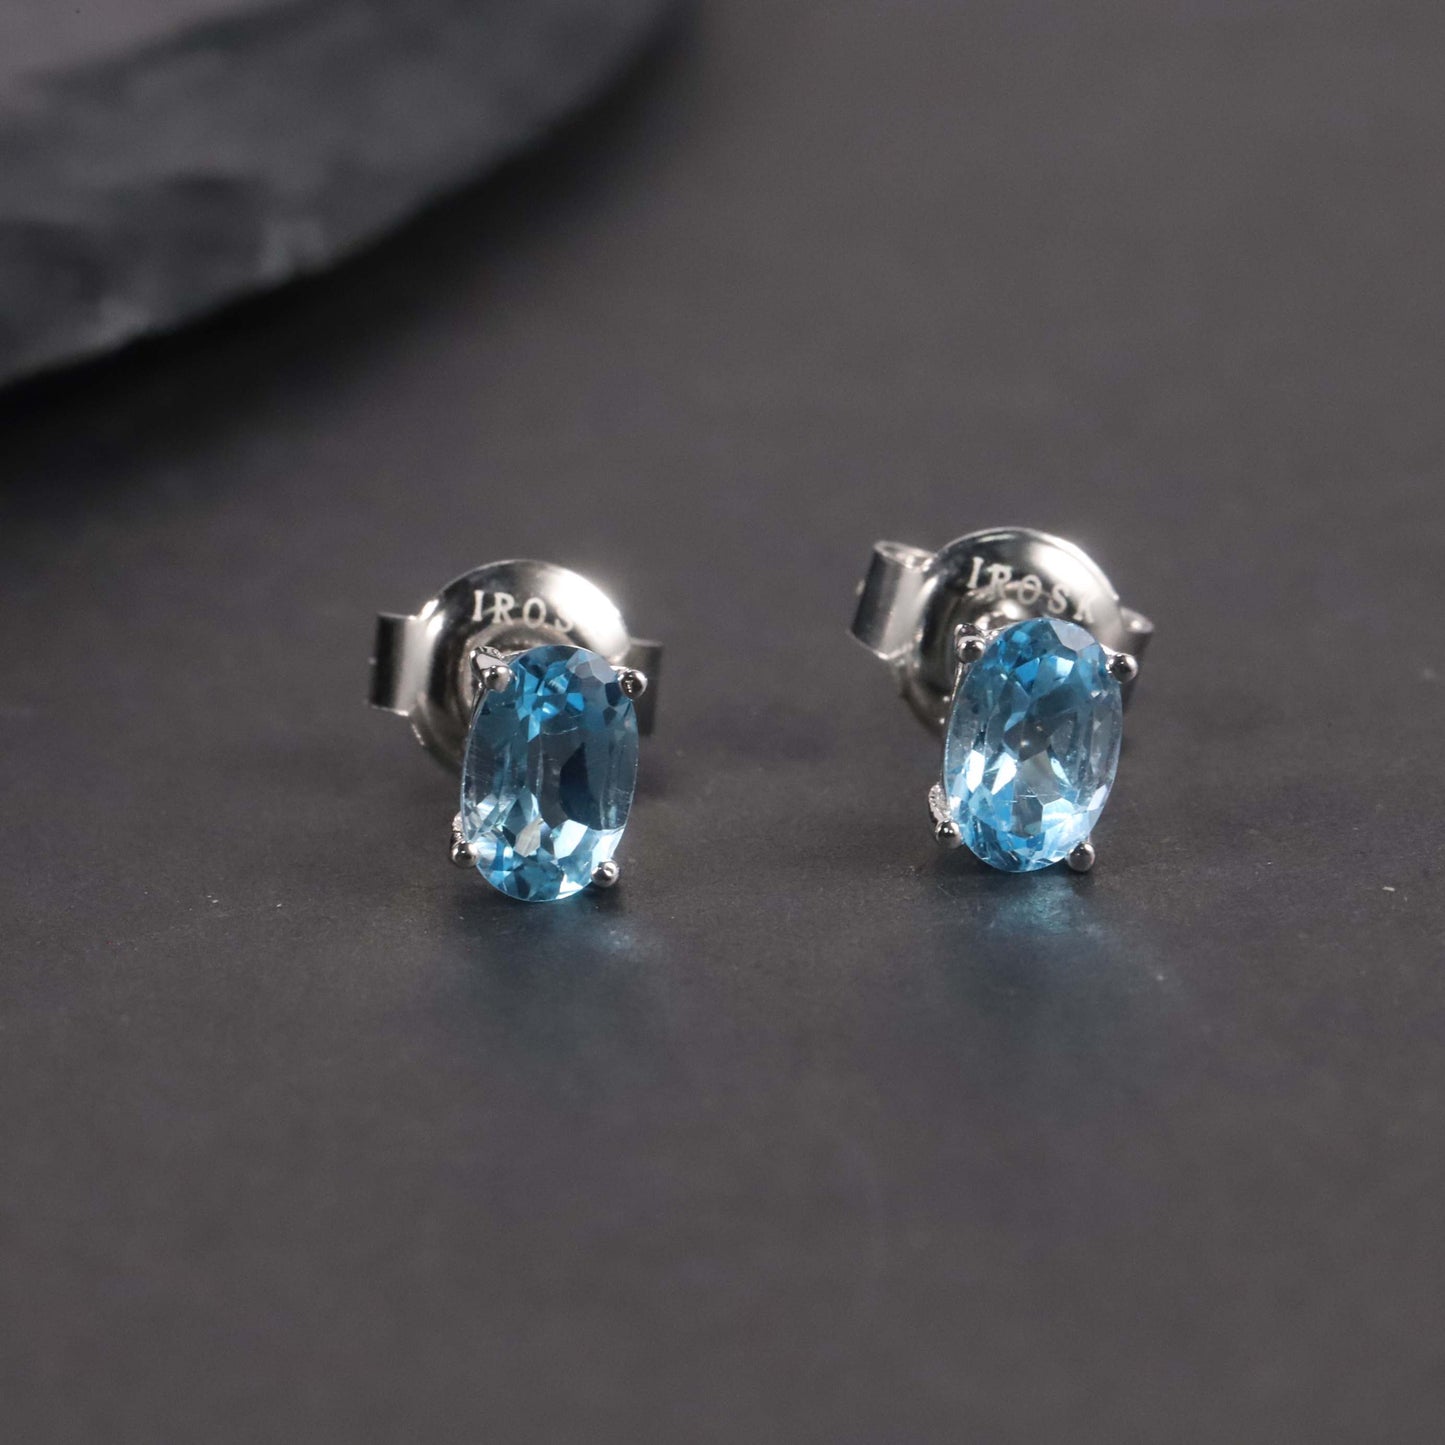 Oval Cut Stud Earrings in Sterling Silver -  Swiss Blue Topaz